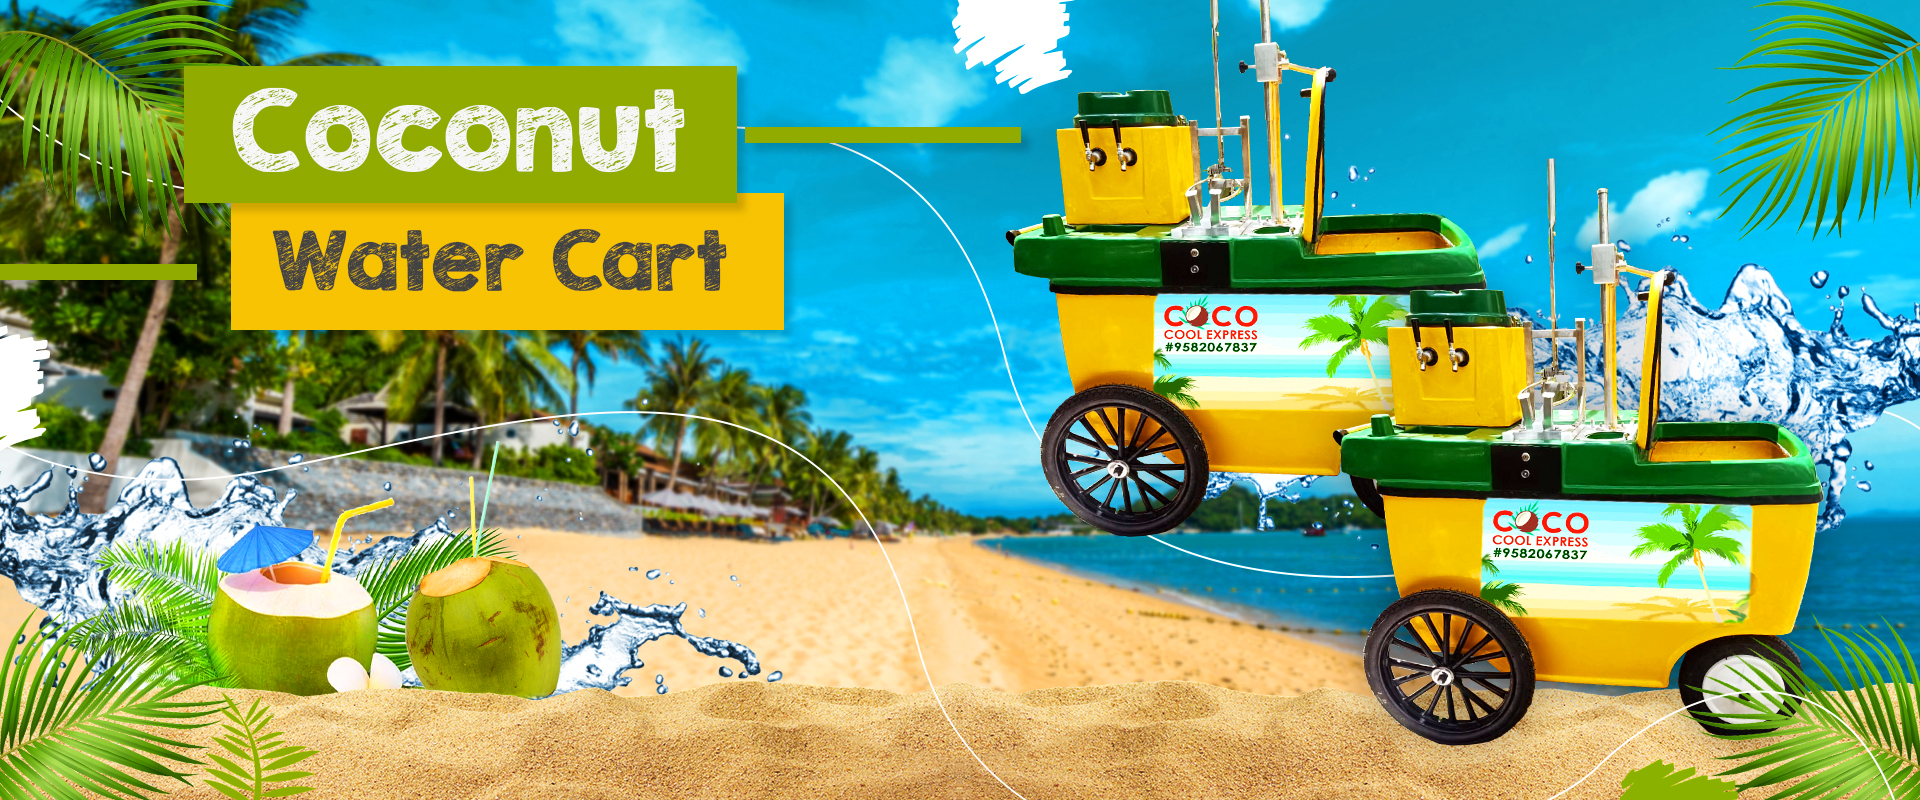 Coconut Water Cart